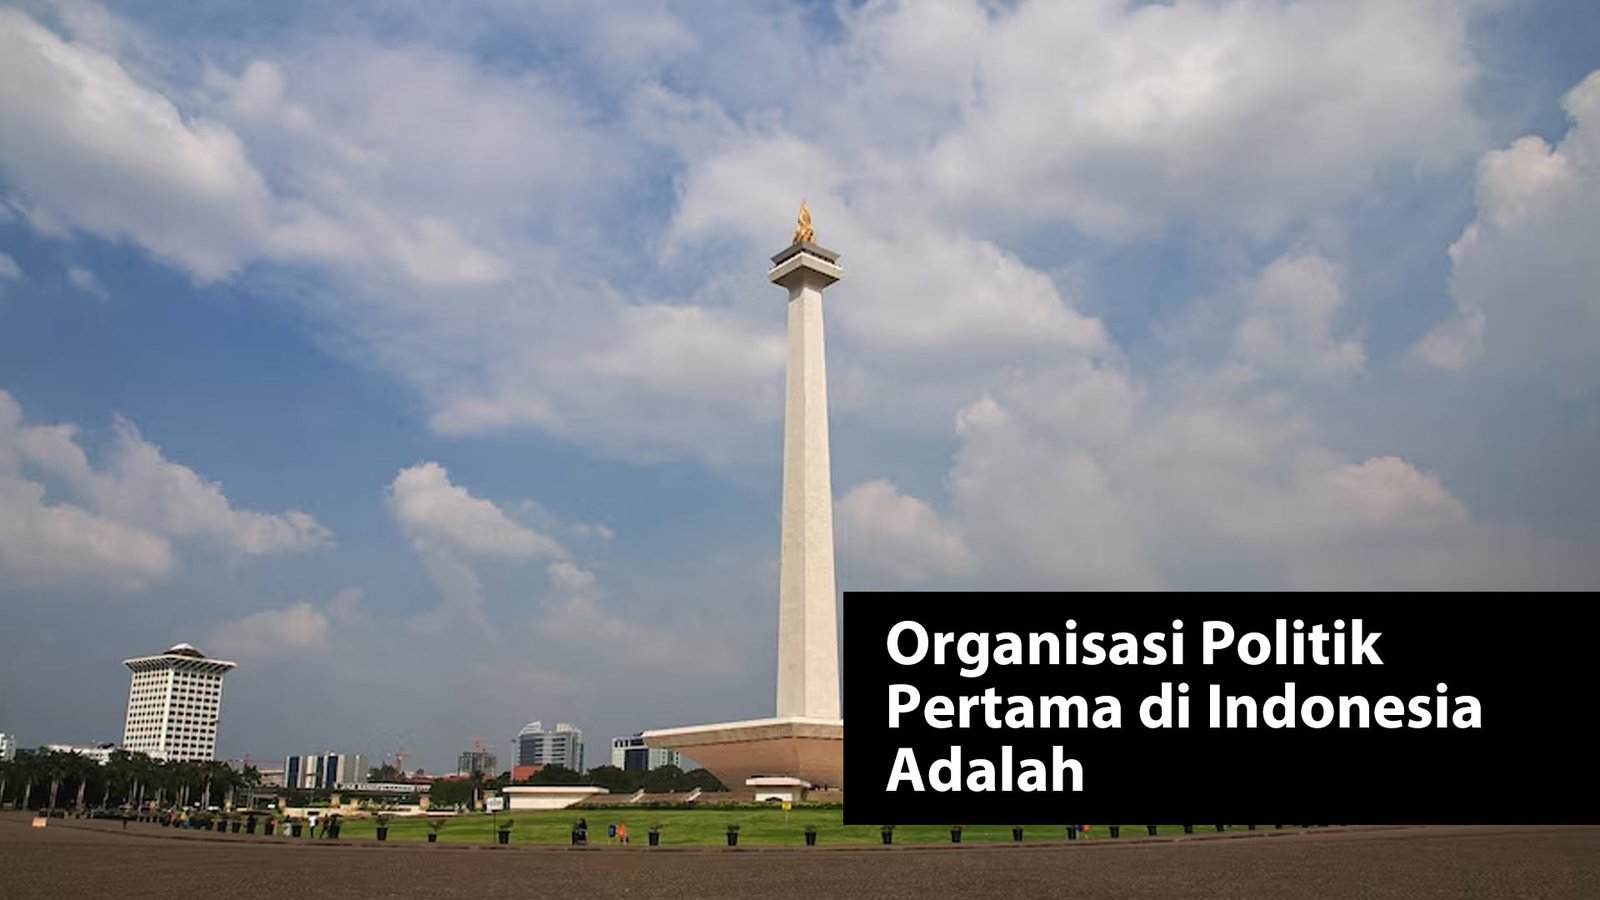 Organisasi Politik Pertama di Indonesia Adalah